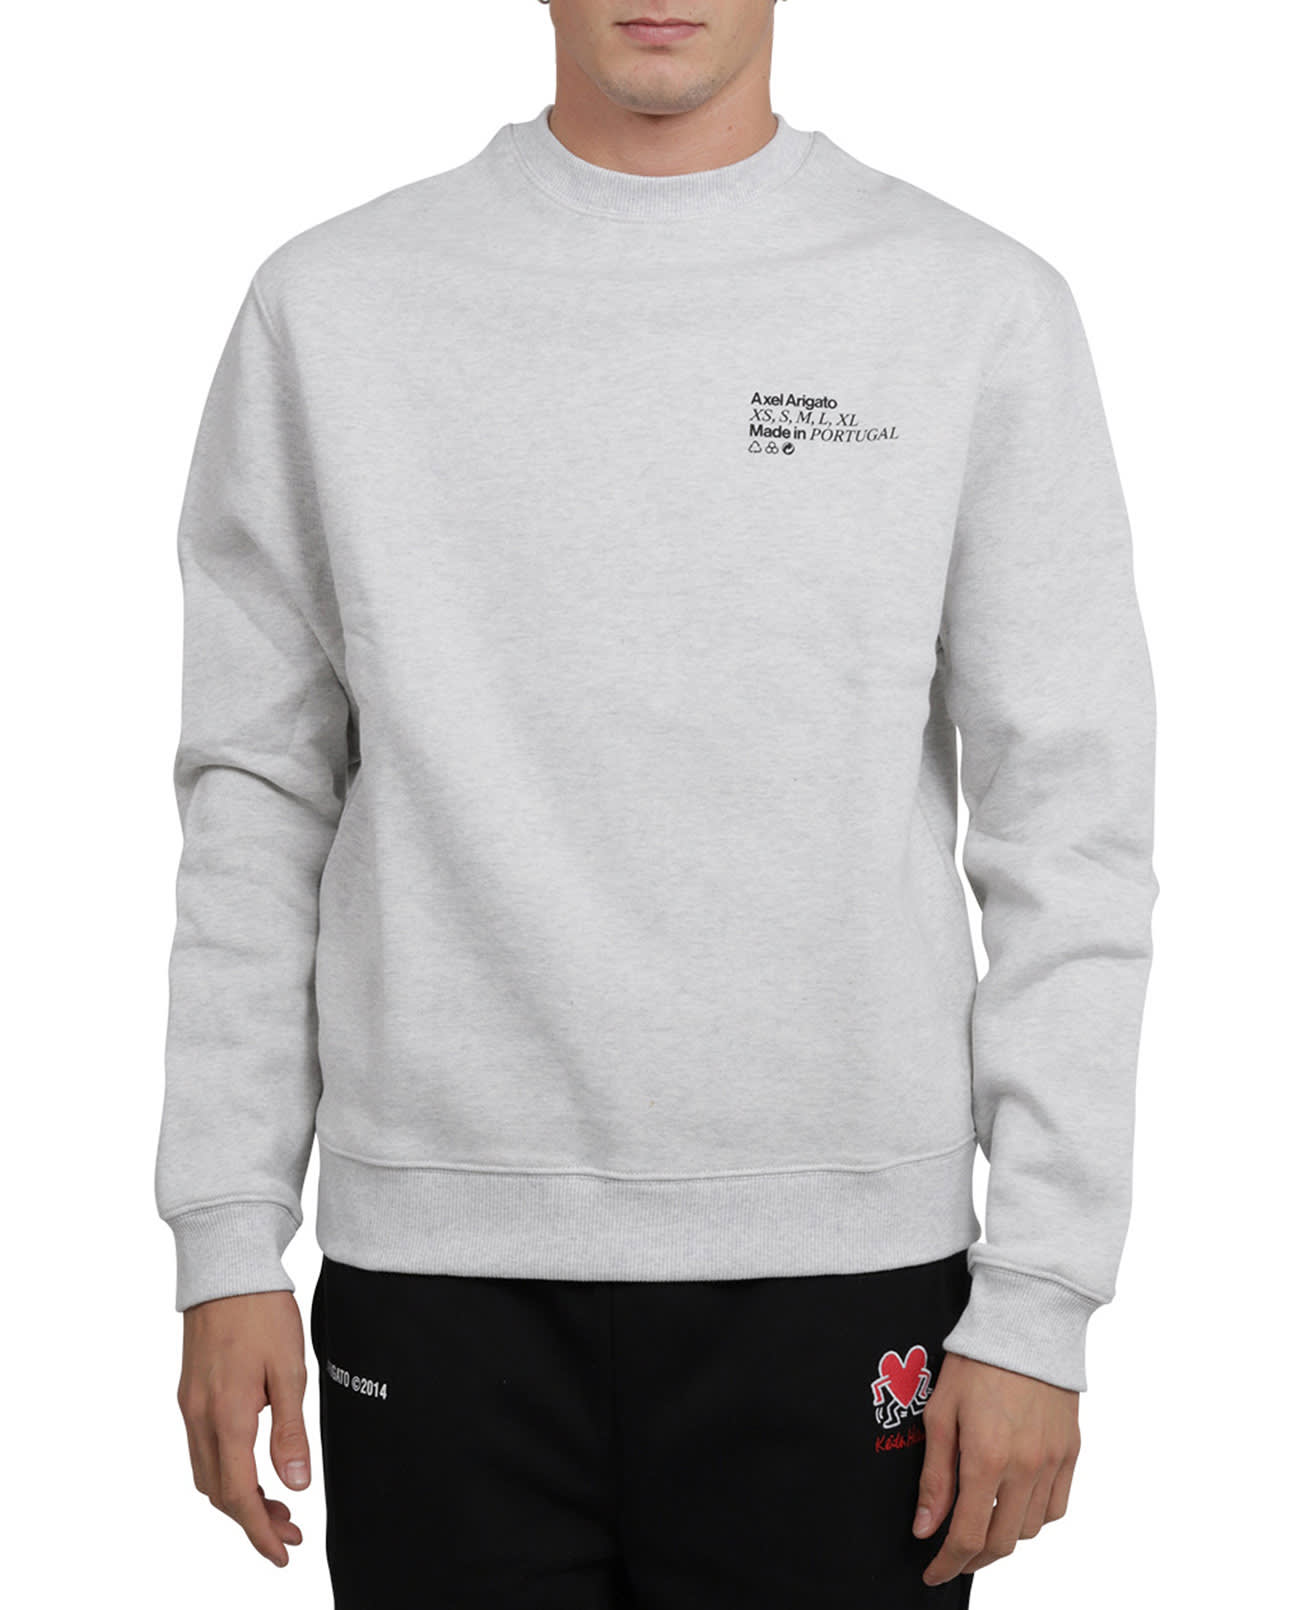 Axel Arigato Grey Size Sweatshirt